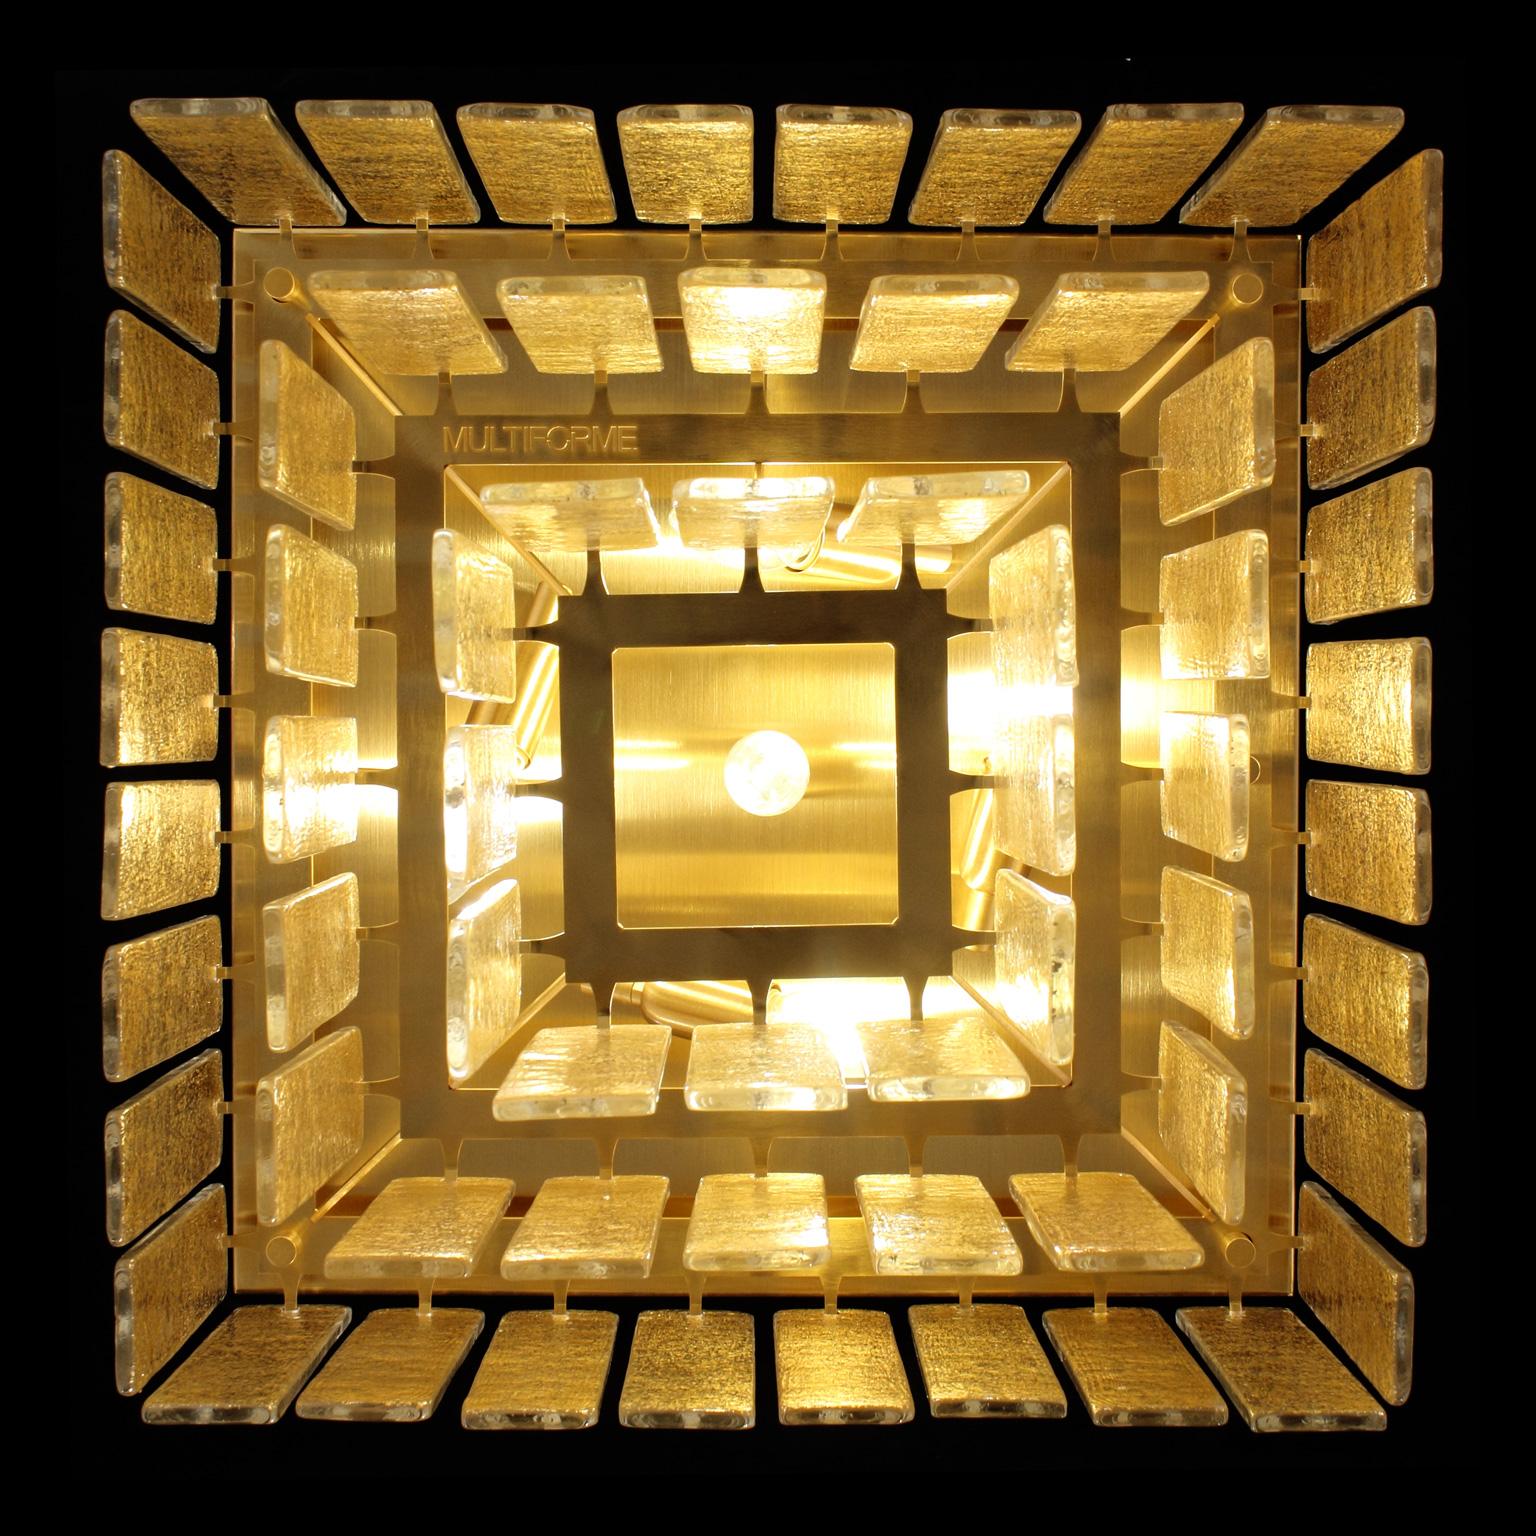 Charleston Deckenleuchte 50 x 40 H, goldfarbene Glasleisten, gebürstete goldfarbene quadratische Leuchte von Multiforme
Die moderne Deckenleuchte Charleston aus unserer Progressive-Kollektion ist ein äußerst vielseitiges Beleuchtungsobjekt, das in